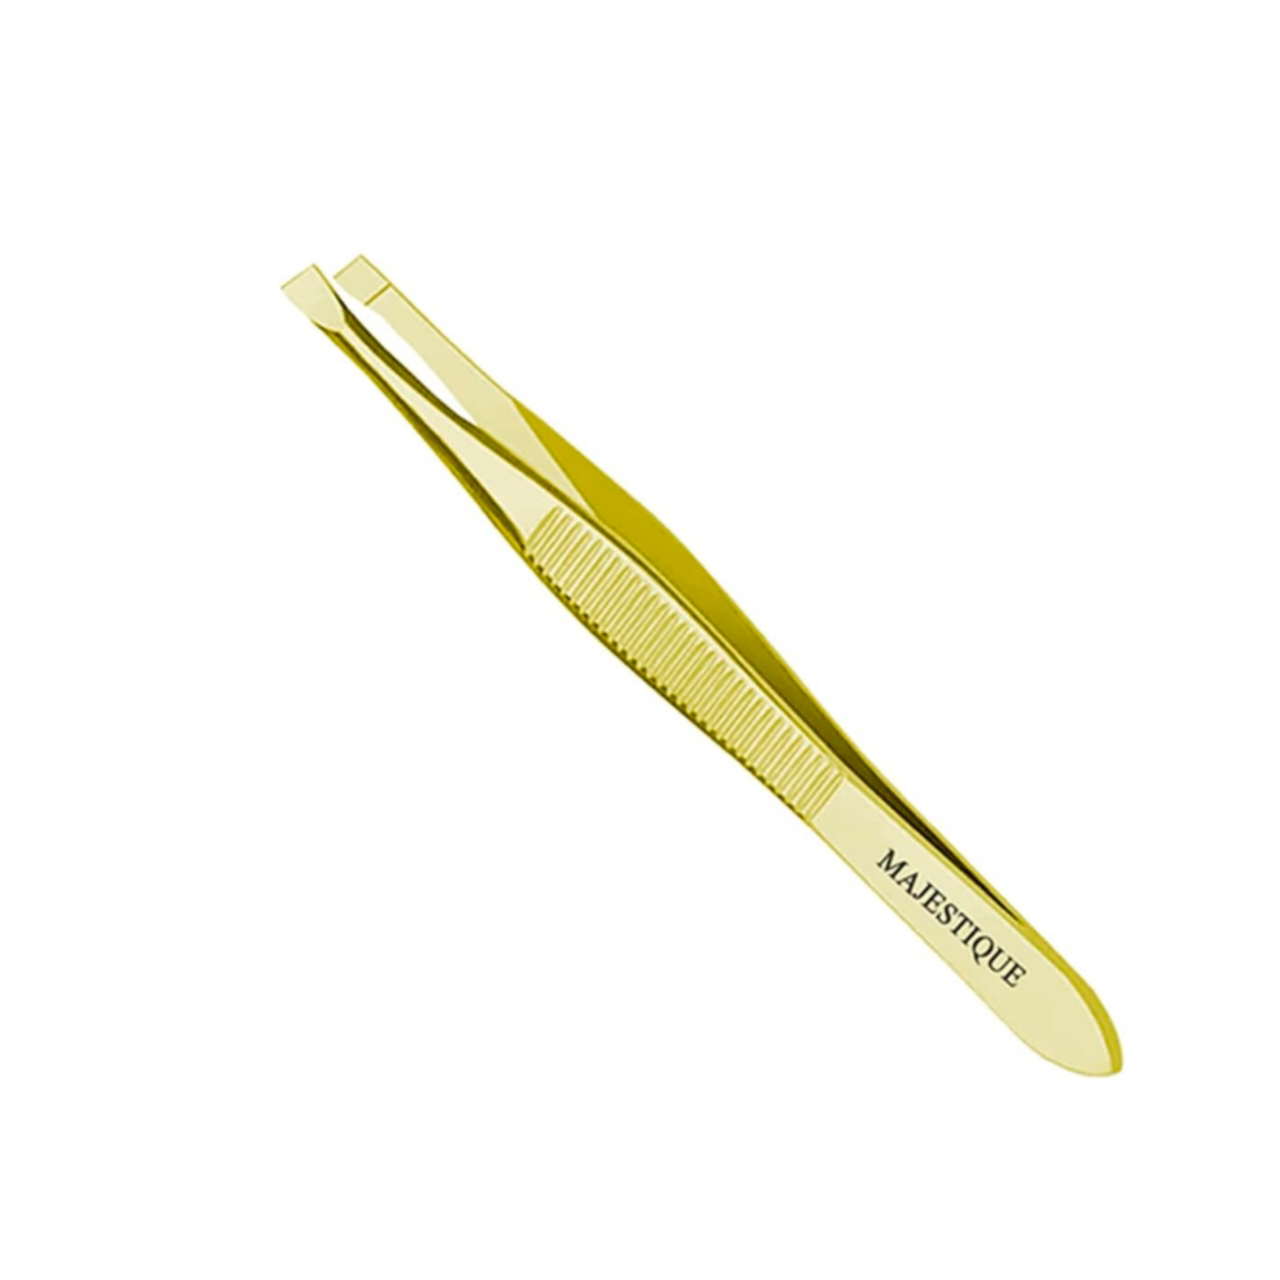 Golden Twizer - Mrp Rs 50, 10 Pcs